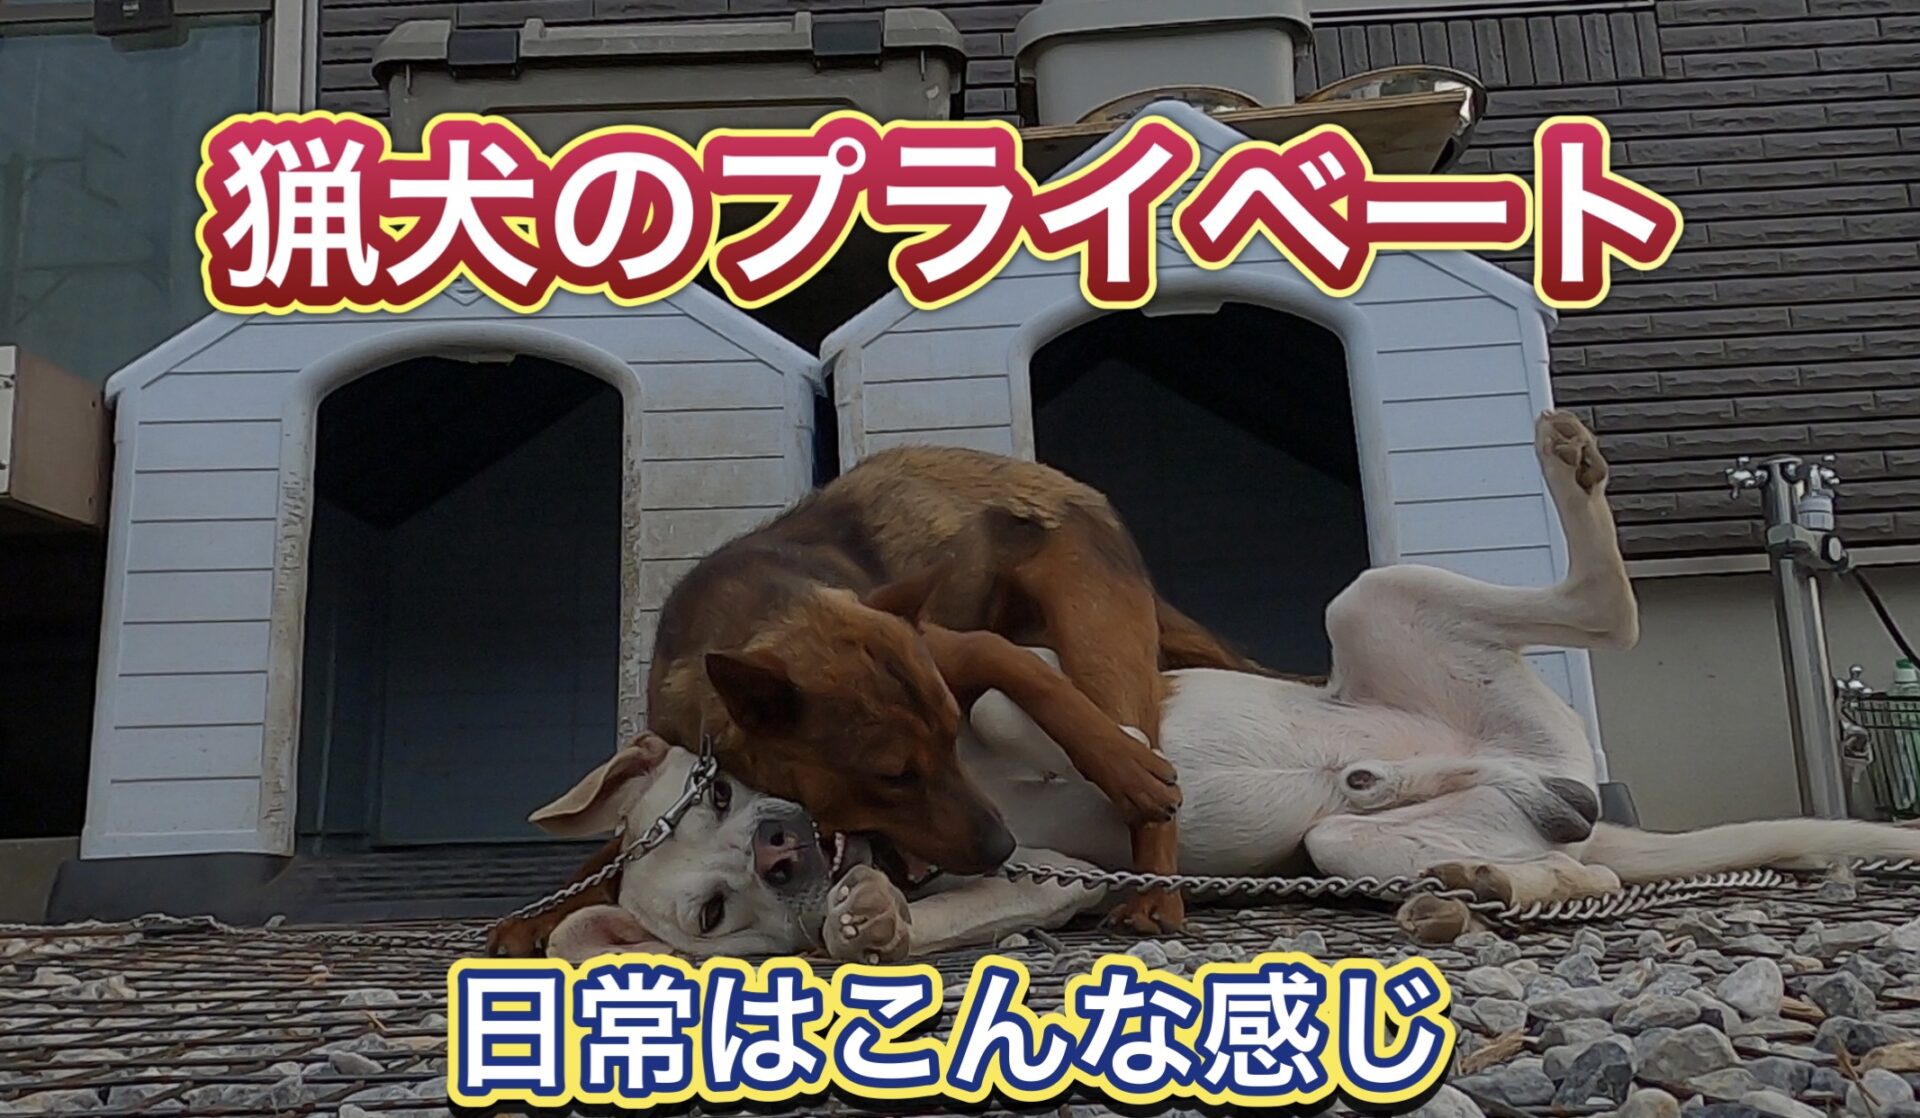 【盗撮映像】監視カメラが捉えた猟犬たちのプライベード。